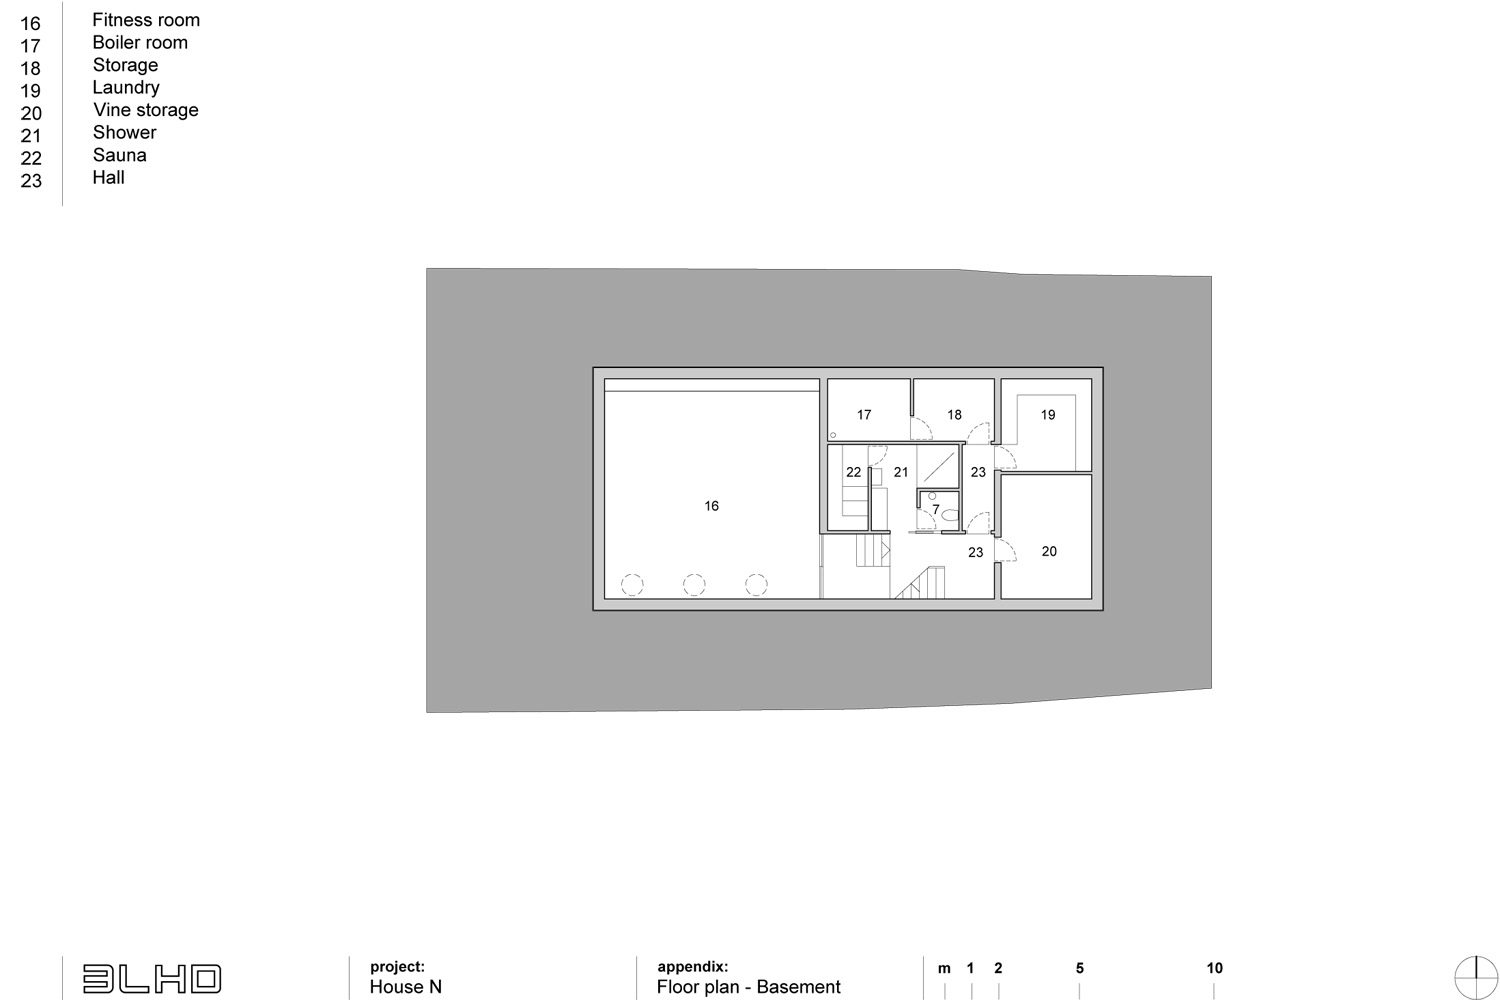 1995272673_basement-floor-plan basement floor plan